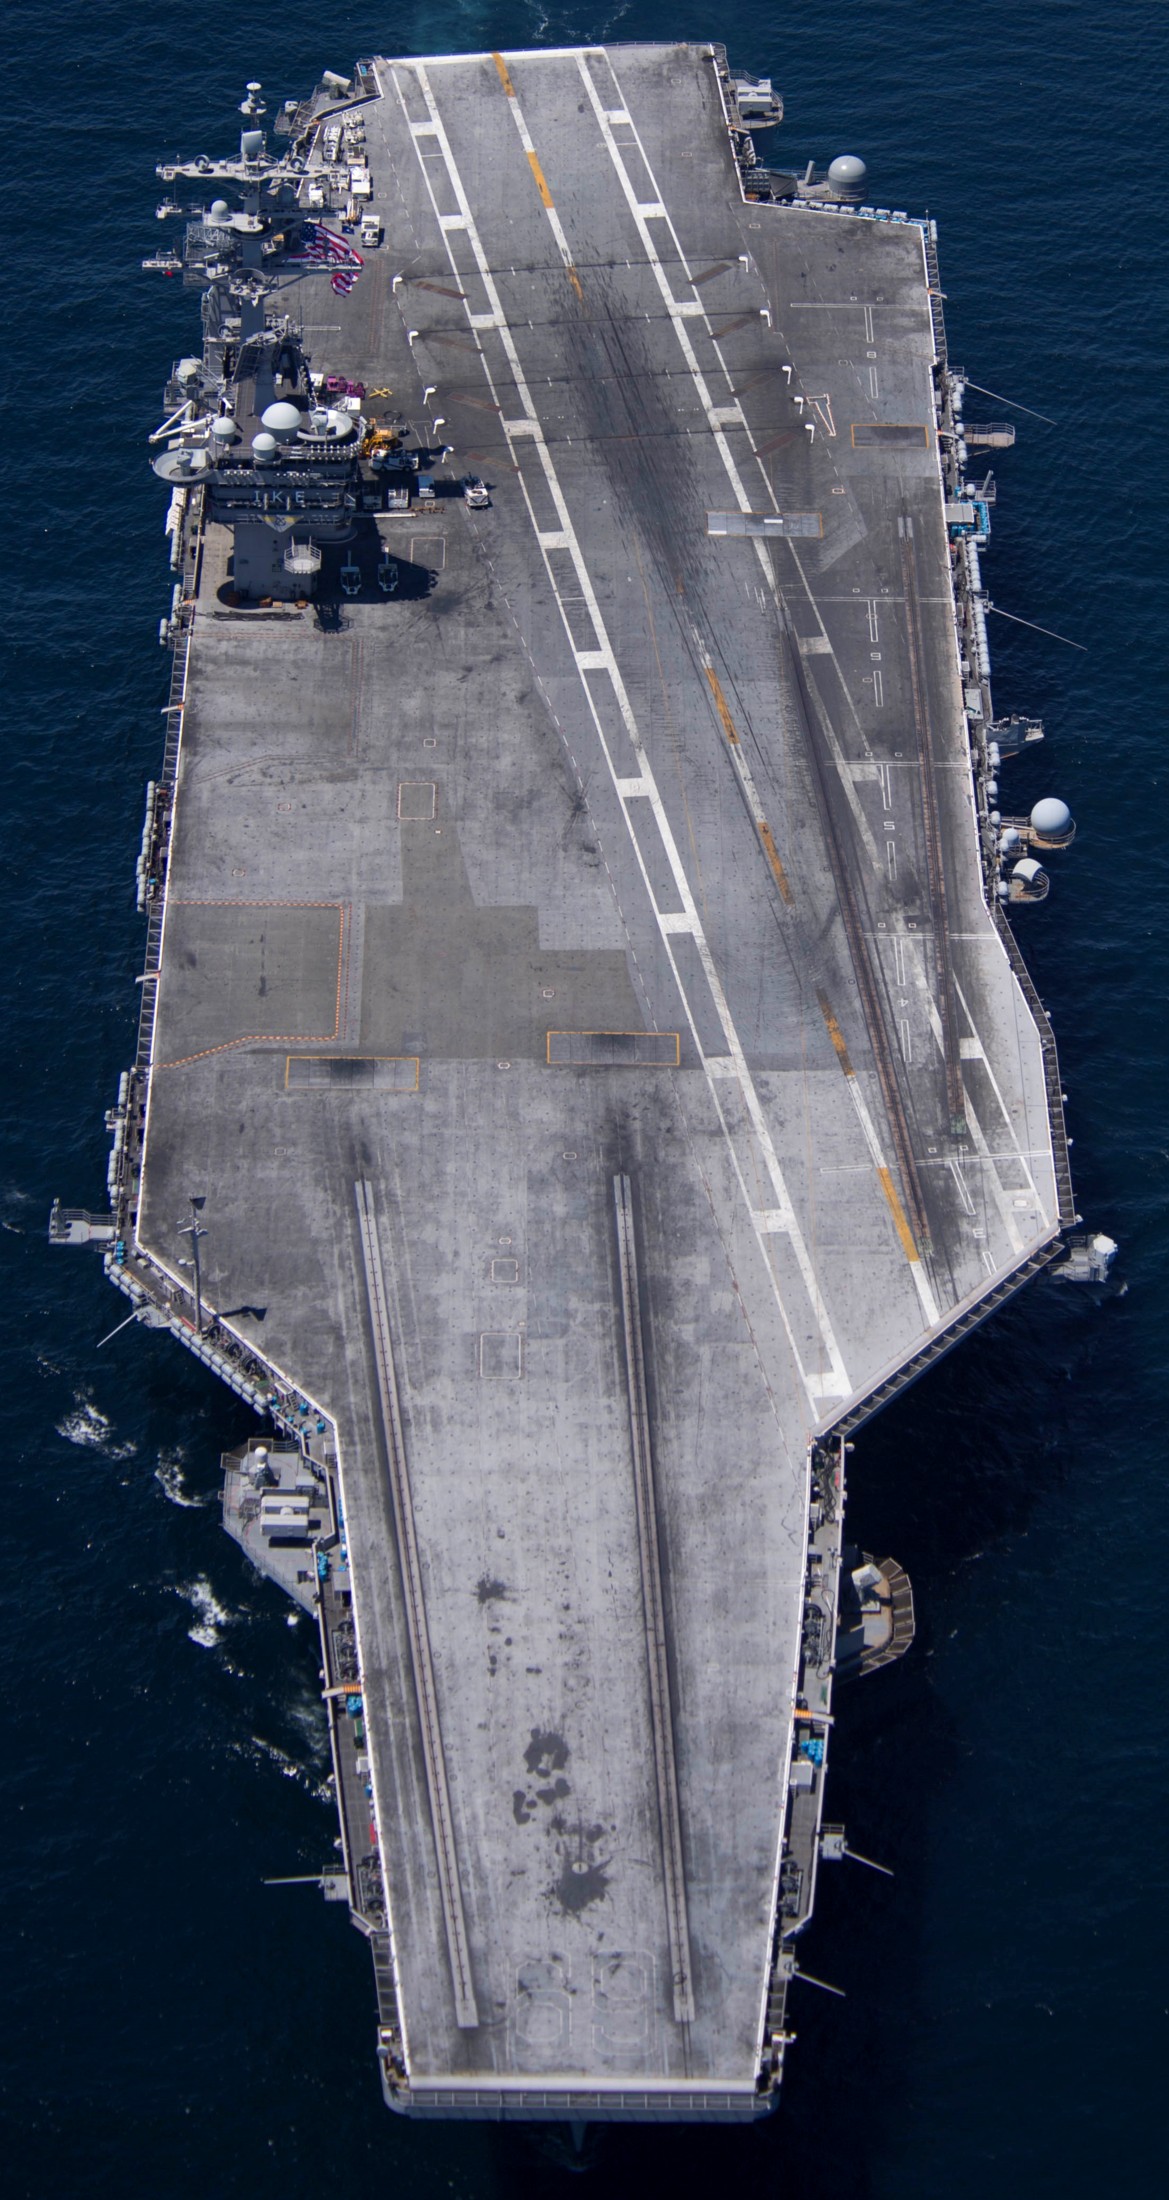 cvn-69 uss dwight d. eisenhower aircraft carrier us navy 36